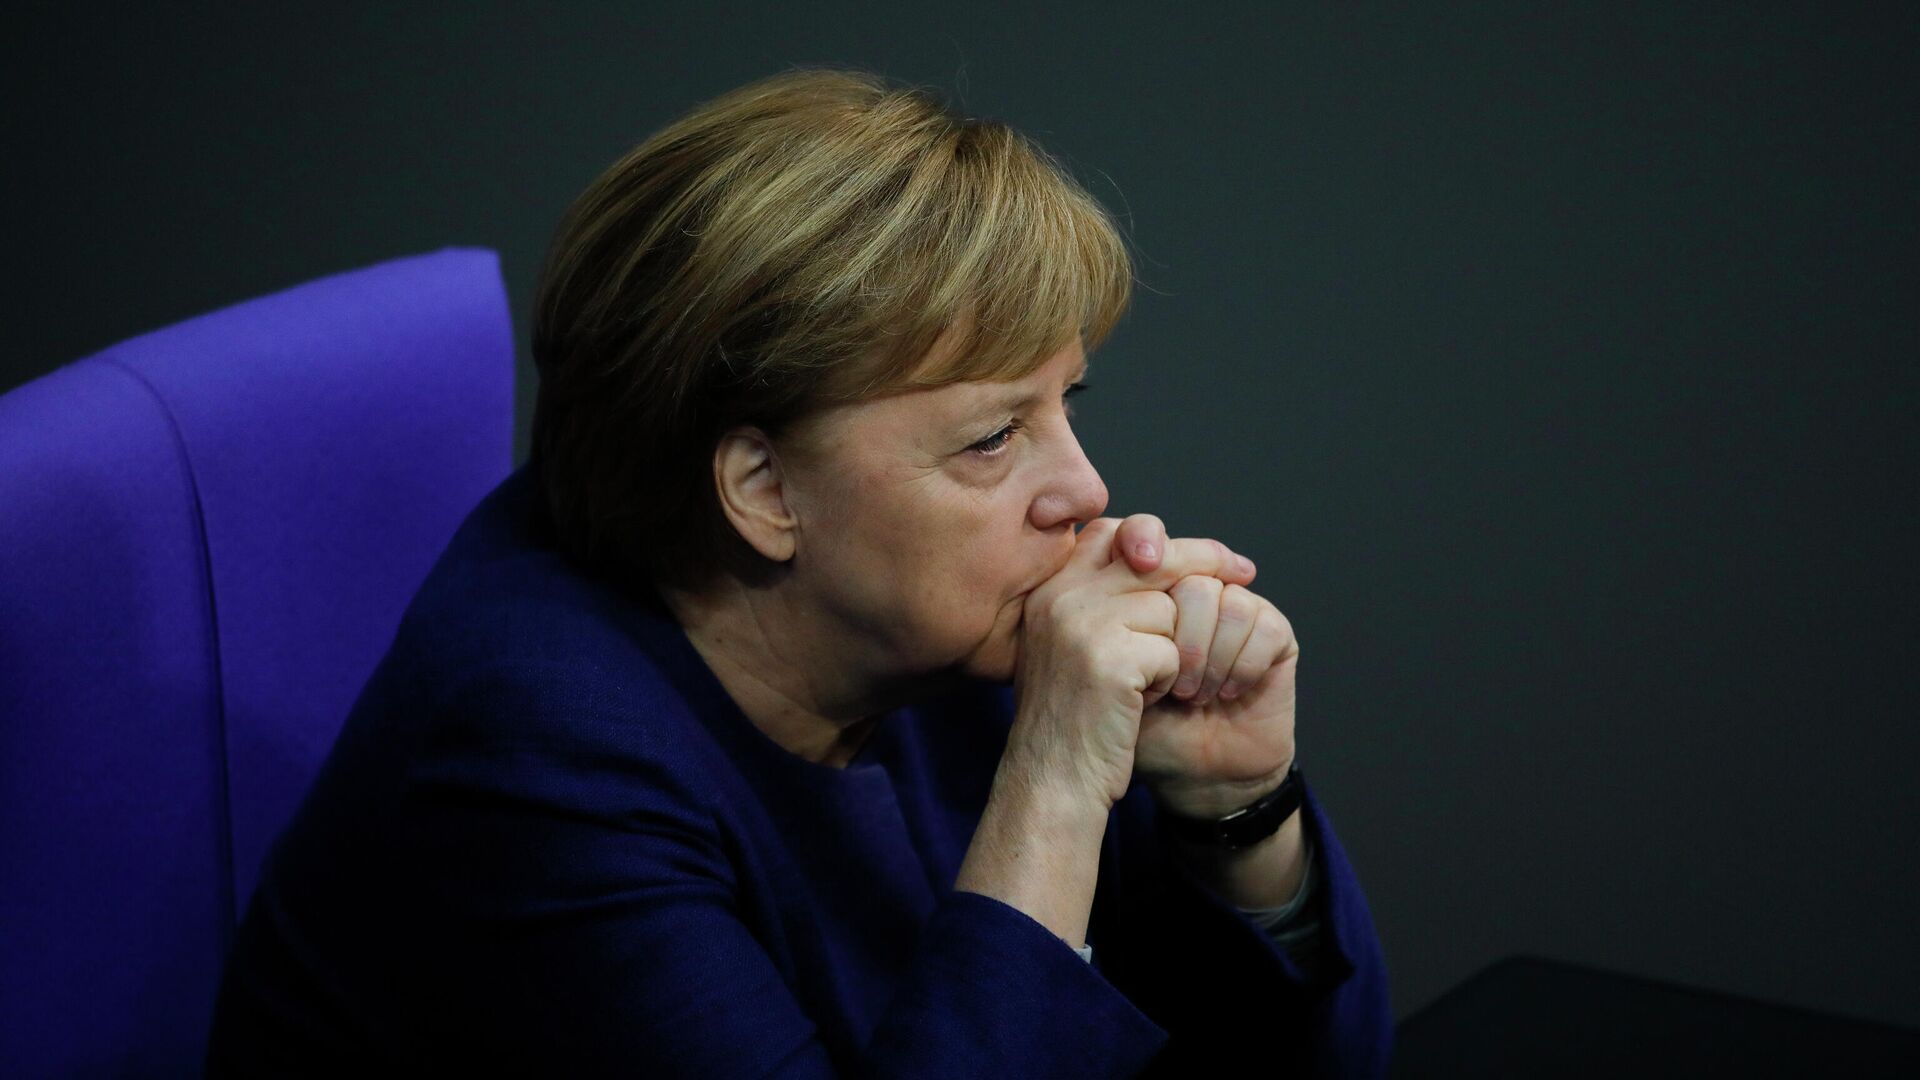 Канцлер Германи Ангела Меркель в Бундестаге, Берлин  - РИА Новости, 1920, 29.03.2021